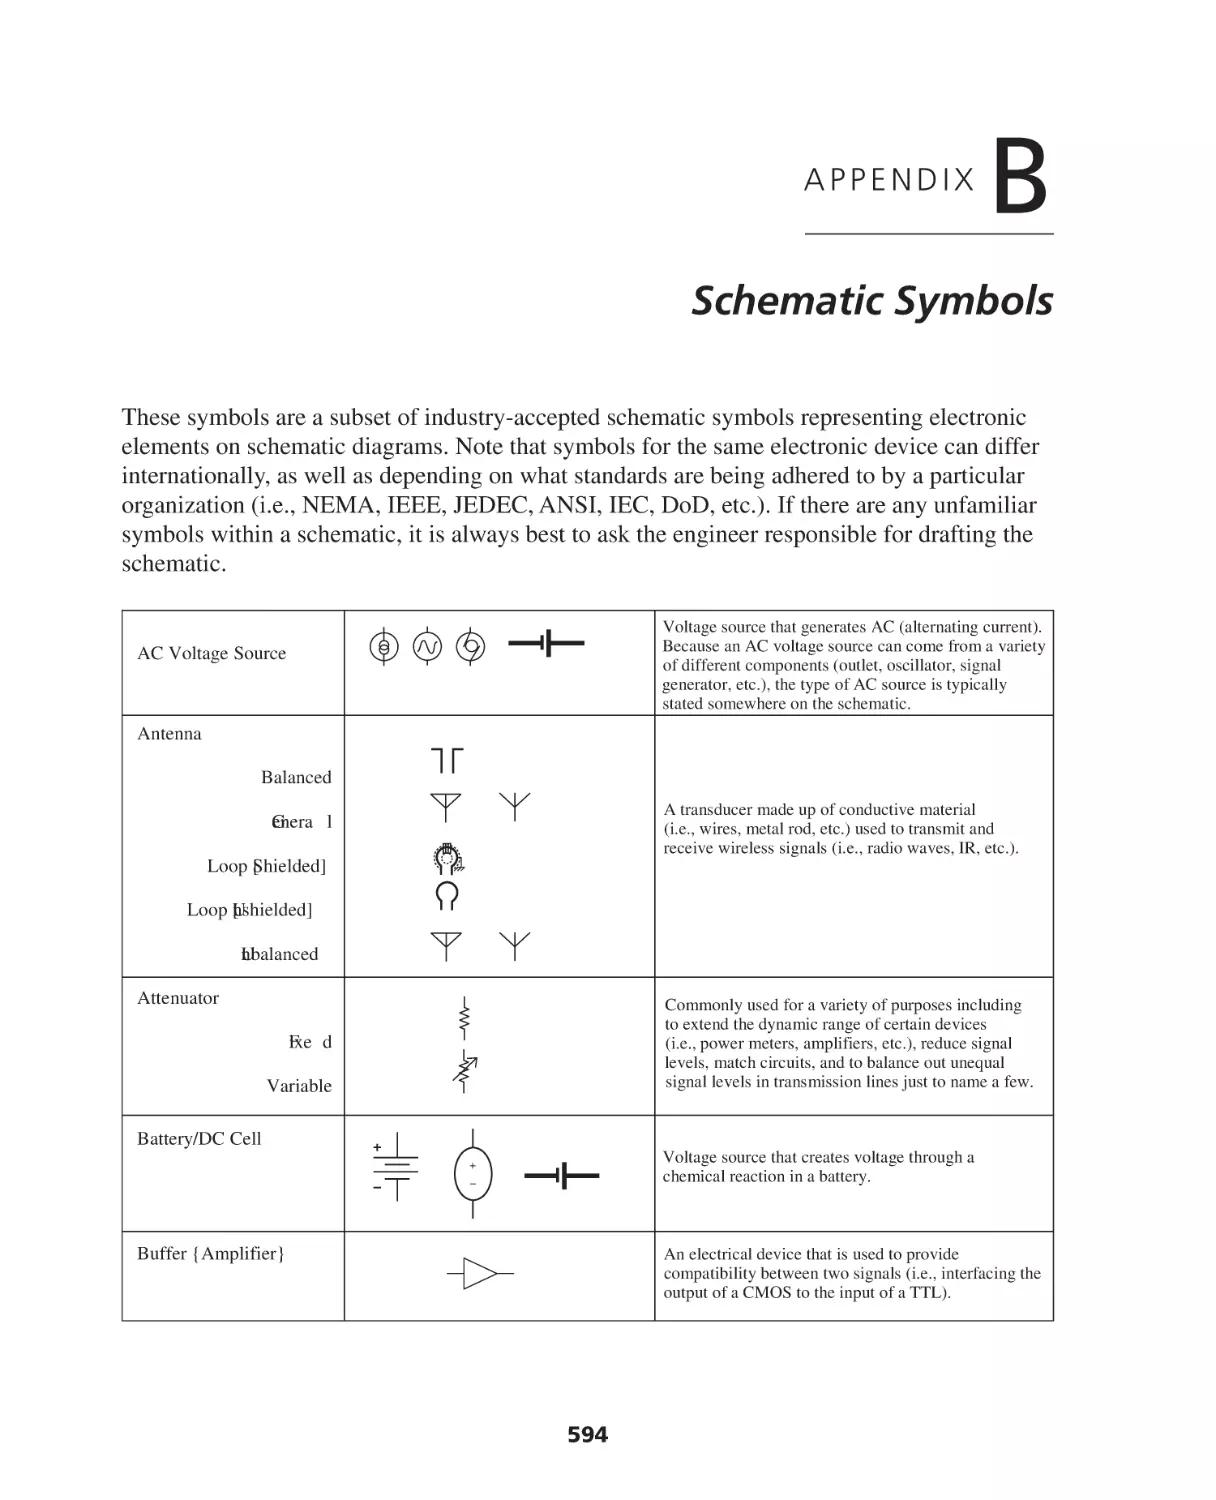 Appendix B. Schematic Symbols